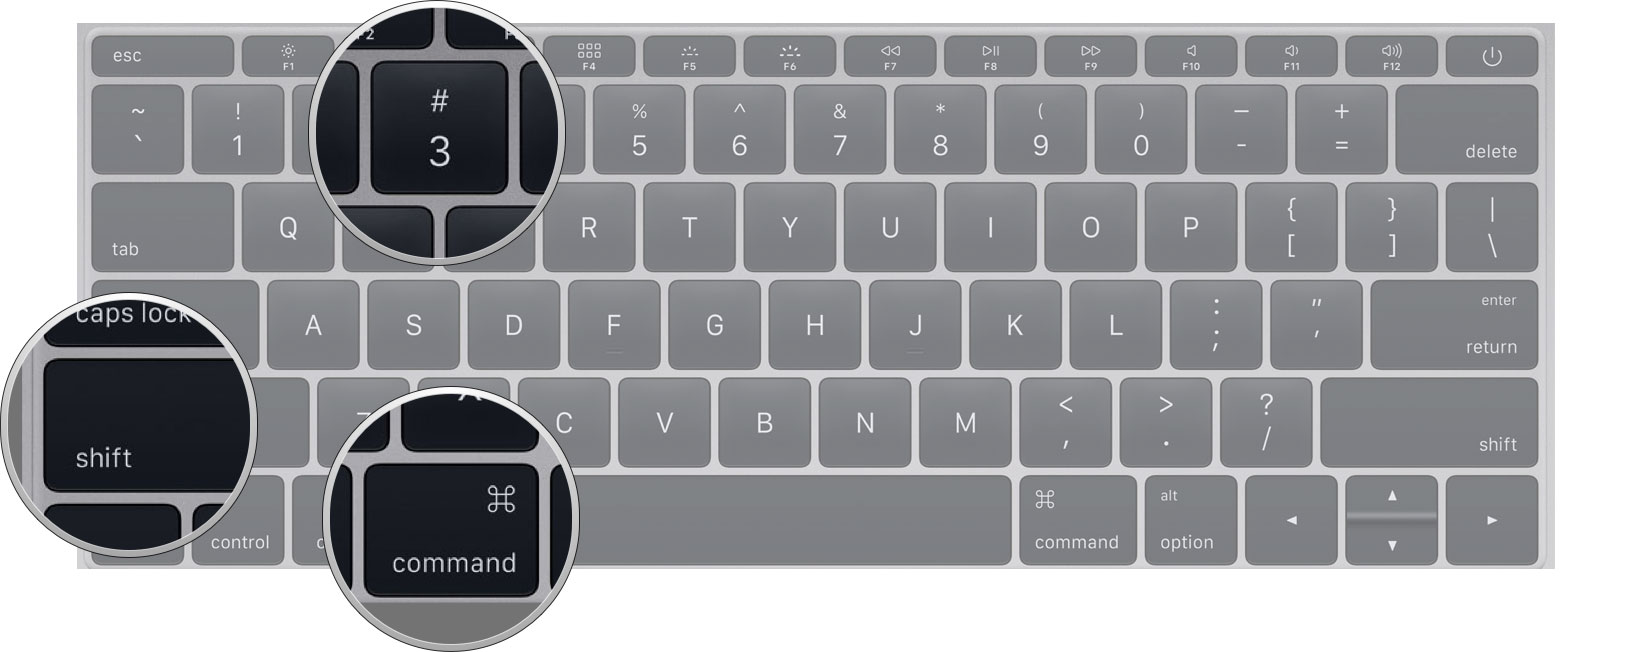 how-to-screen-shot-mac-keyboard-3.jpg